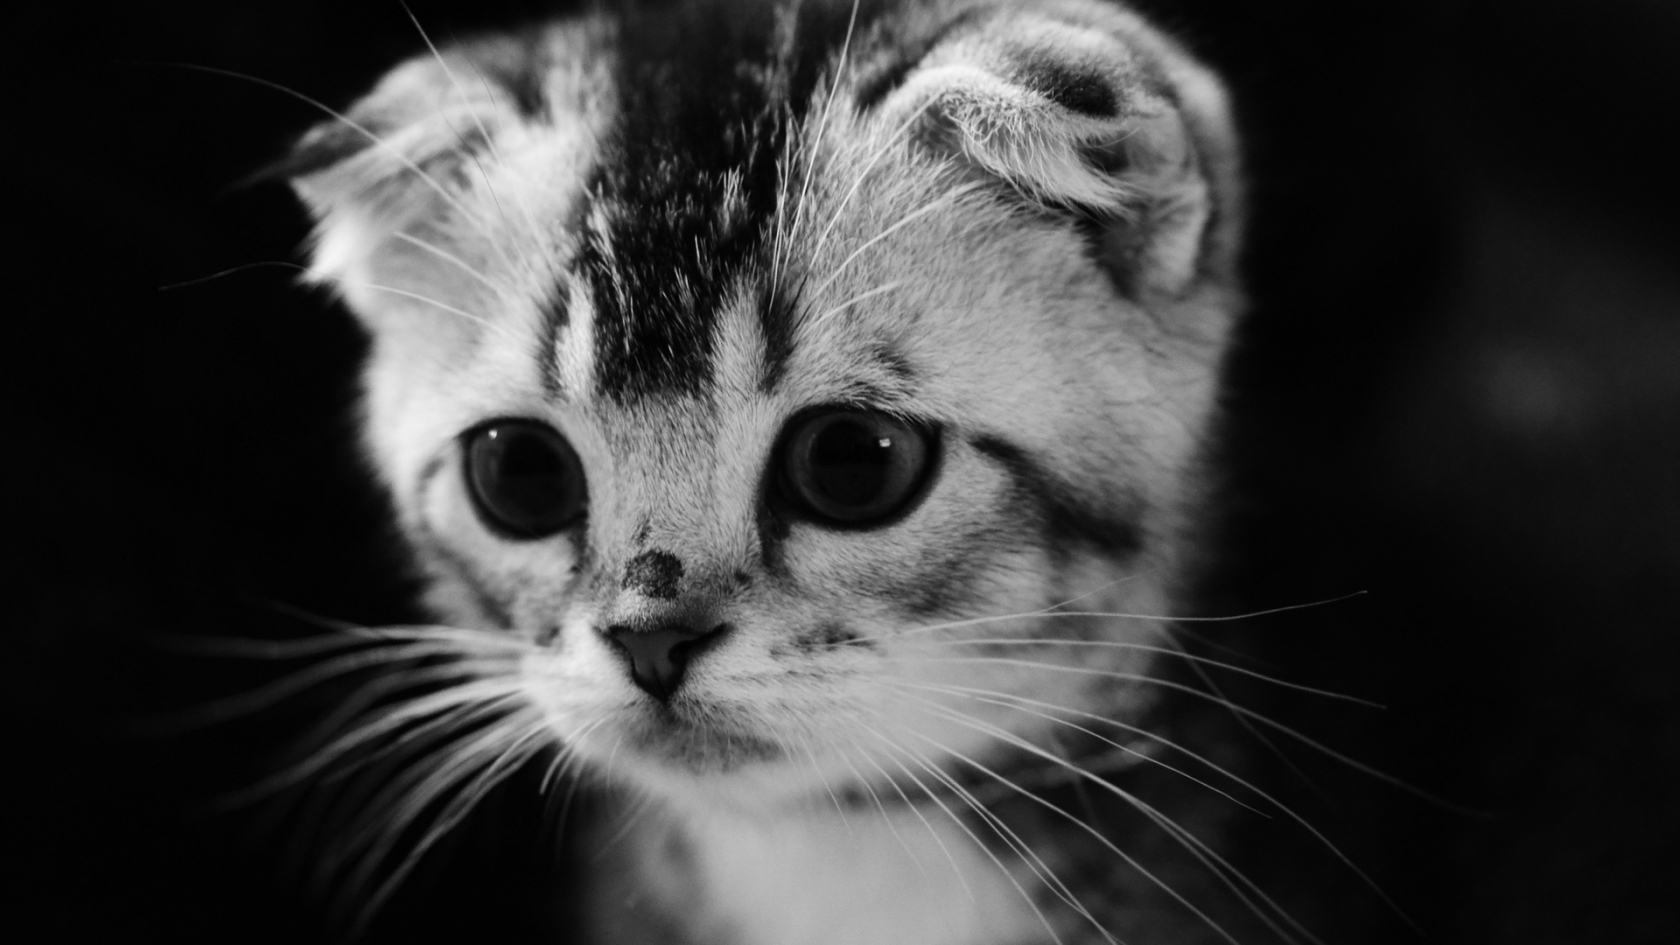 Cute Gray Kitten for 1680 x 945 HDTV resolution